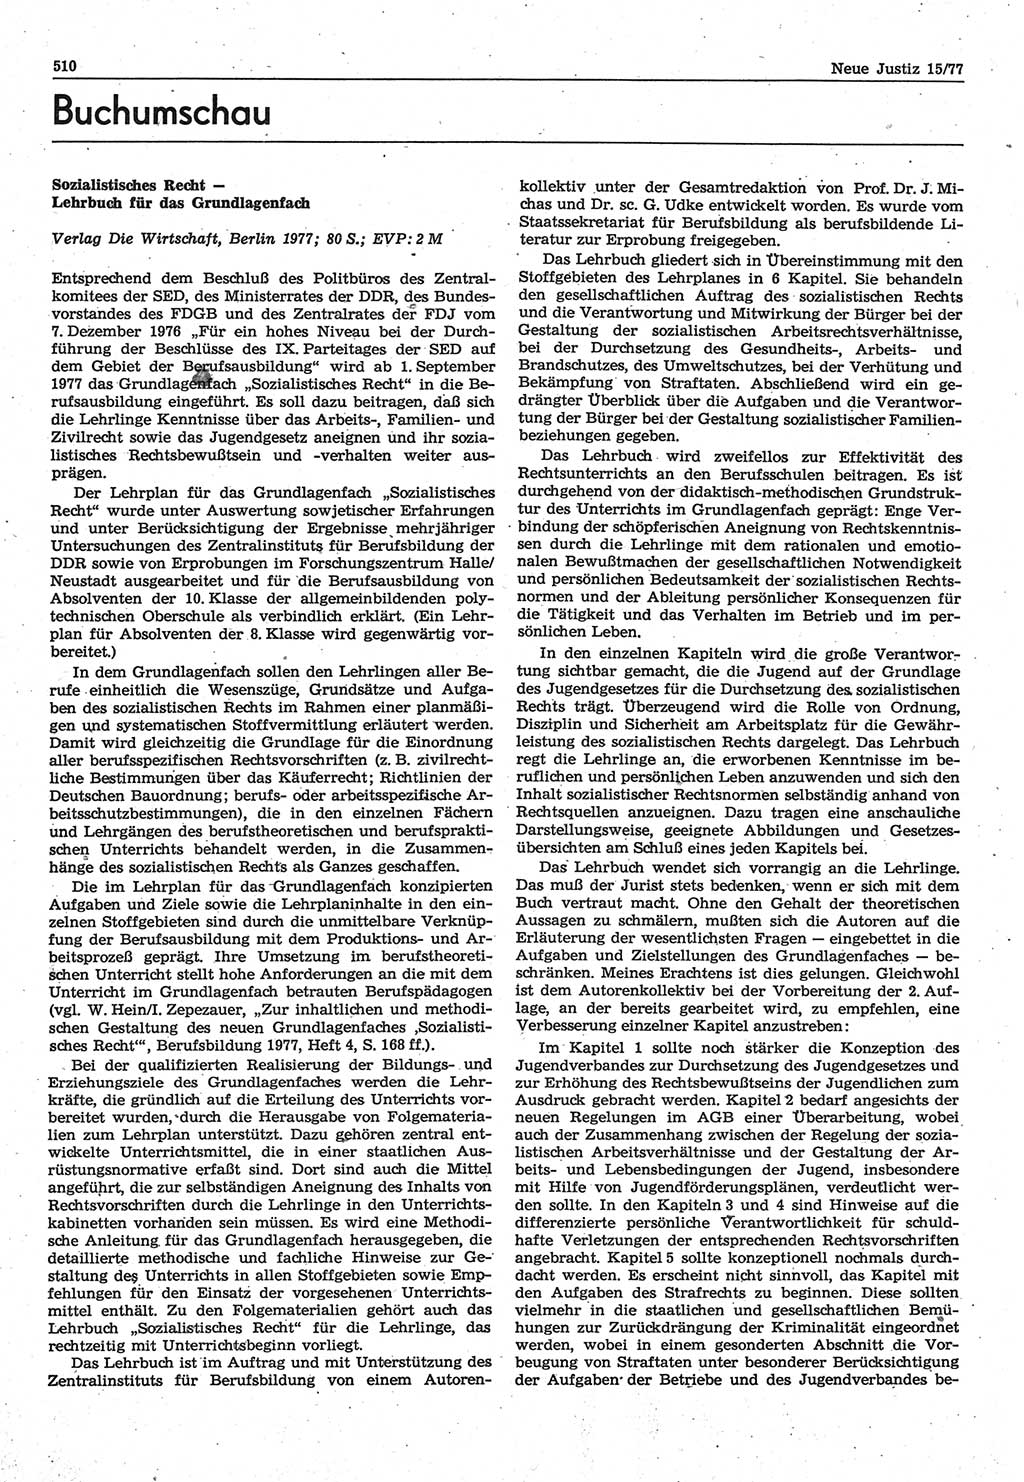 Neue Justiz (NJ), Zeitschrift für Recht und Rechtswissenschaft-Zeitschrift, sozialistisches Recht und Gesetzlichkeit, 31. Jahrgang 1977, Seite 510 (NJ DDR 1977, S. 510)